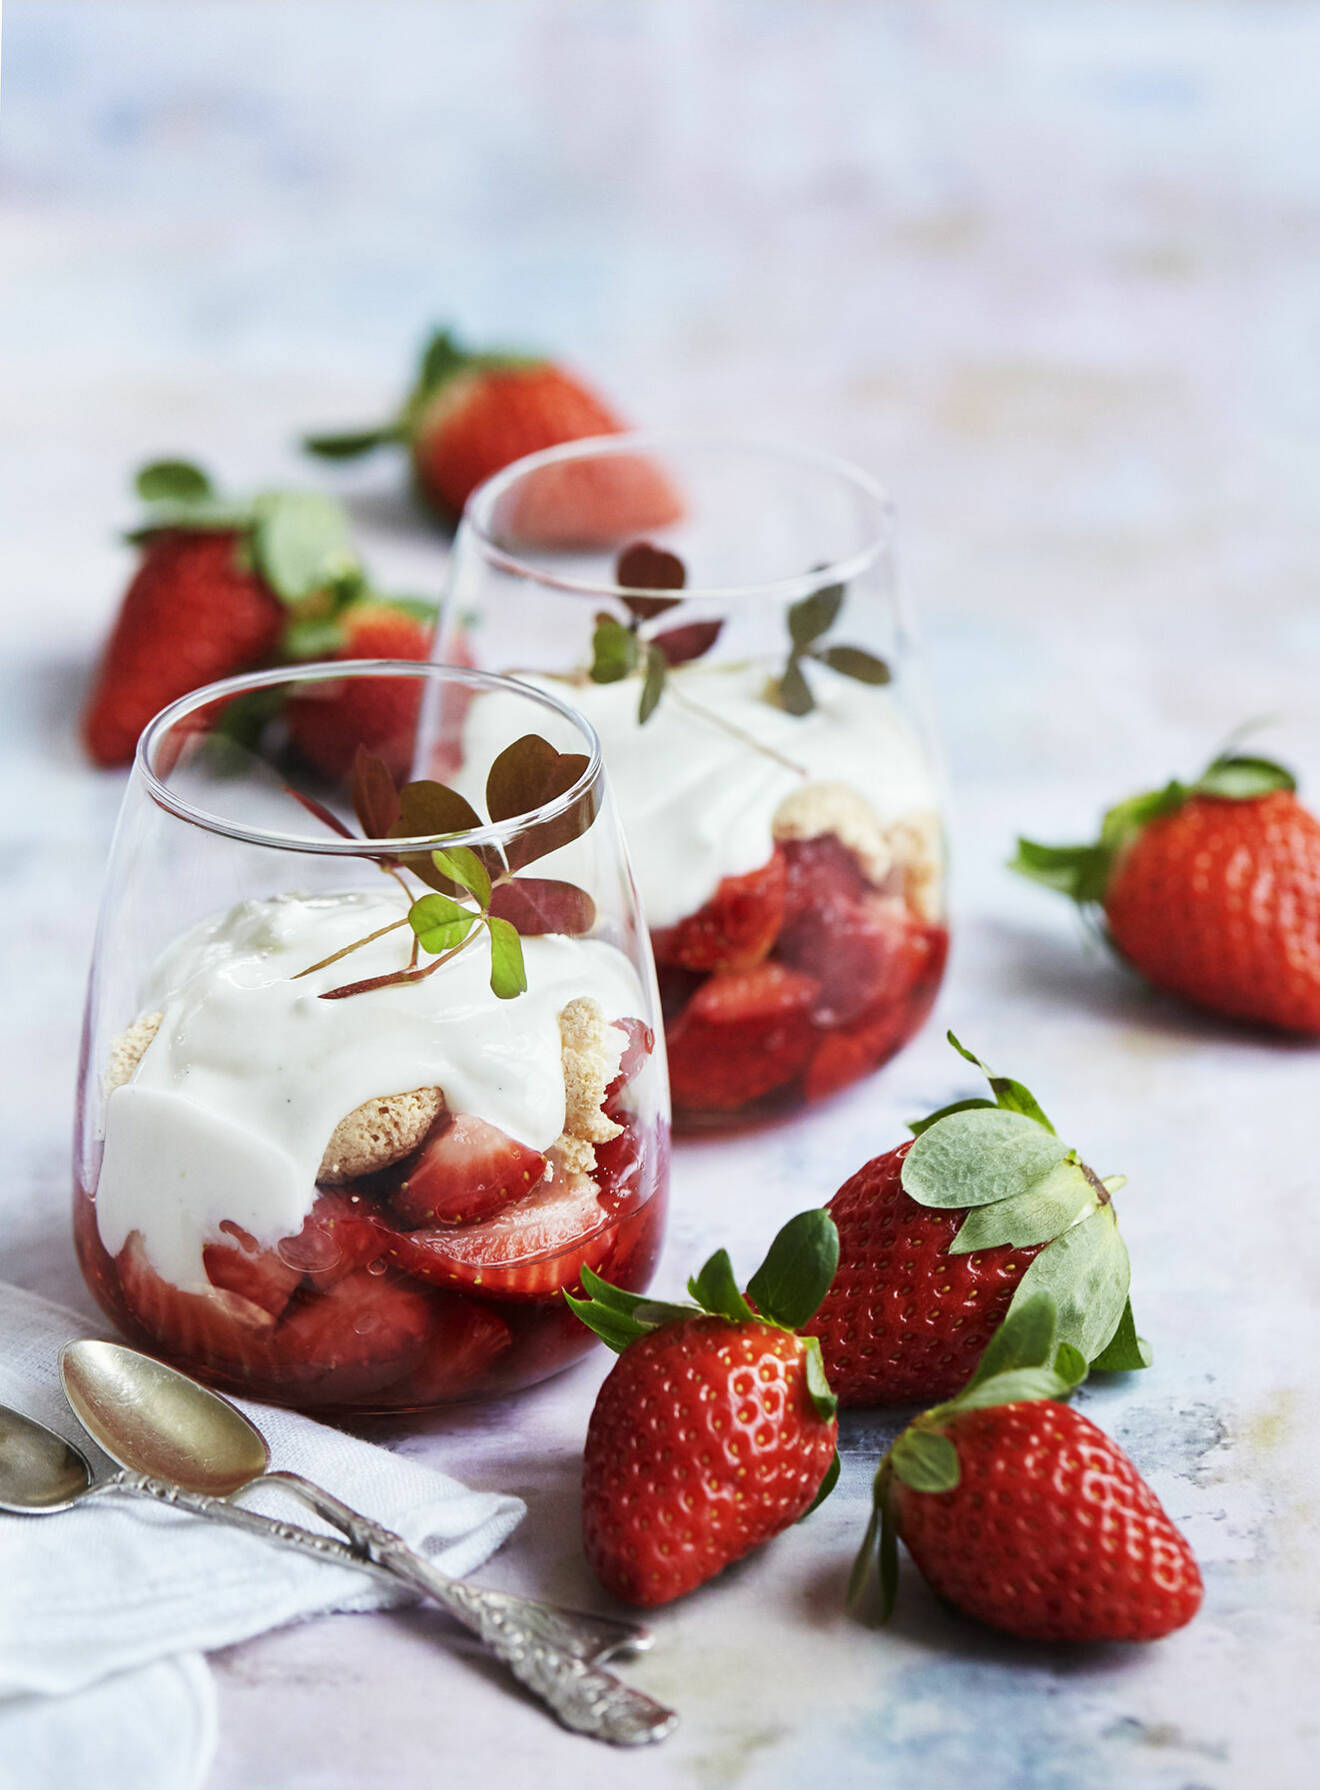 Bjud på en jordgubbsdessert med fläderyoghurt och drömmar